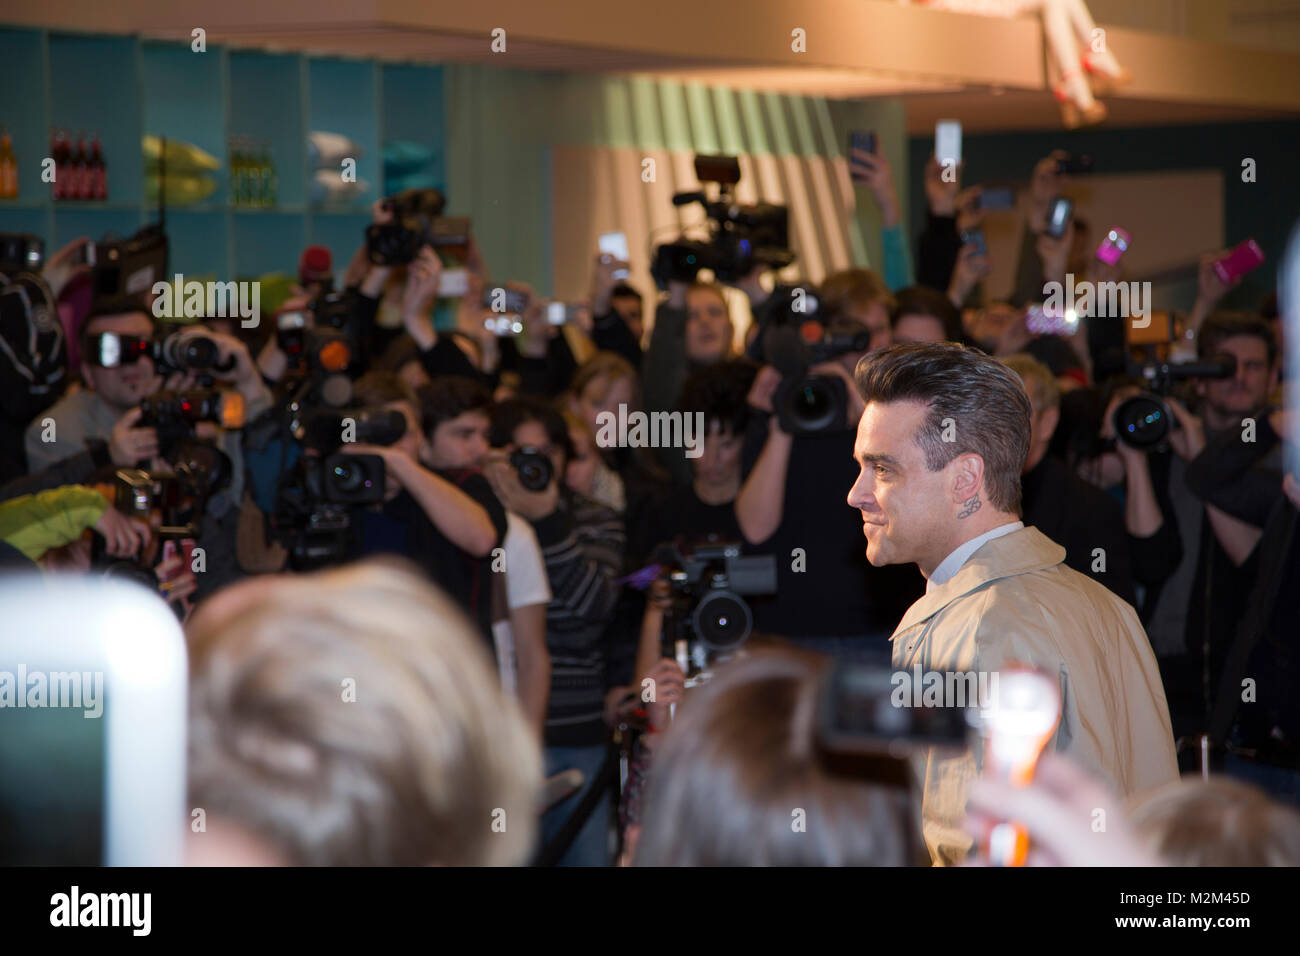 Robbie Williams umringt von Fans und Fotografen bei der Präsentation seines Männermode-Labels 'Farrell' ins KaDeWe Berlin, am 26.02.2013 Stock Photo